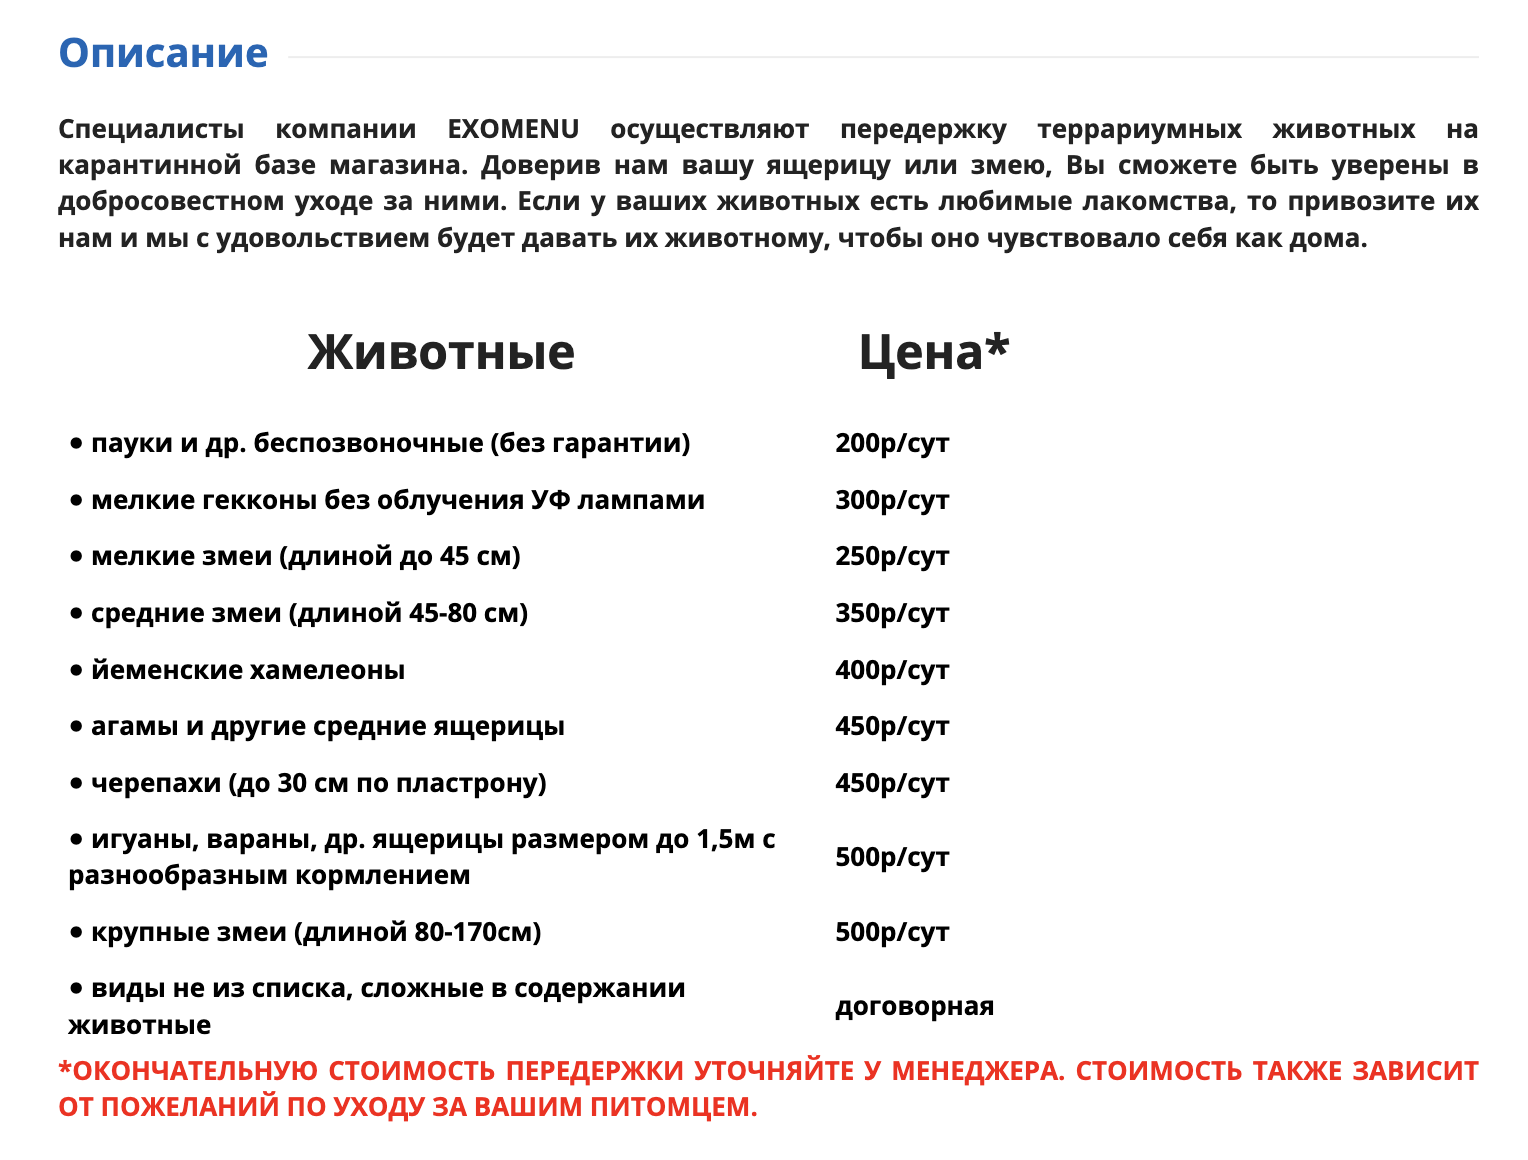 Оставить агаму в питерском Exomenu.ru обойдется дешевле — 450 ₽. Источник: exomenu.ru